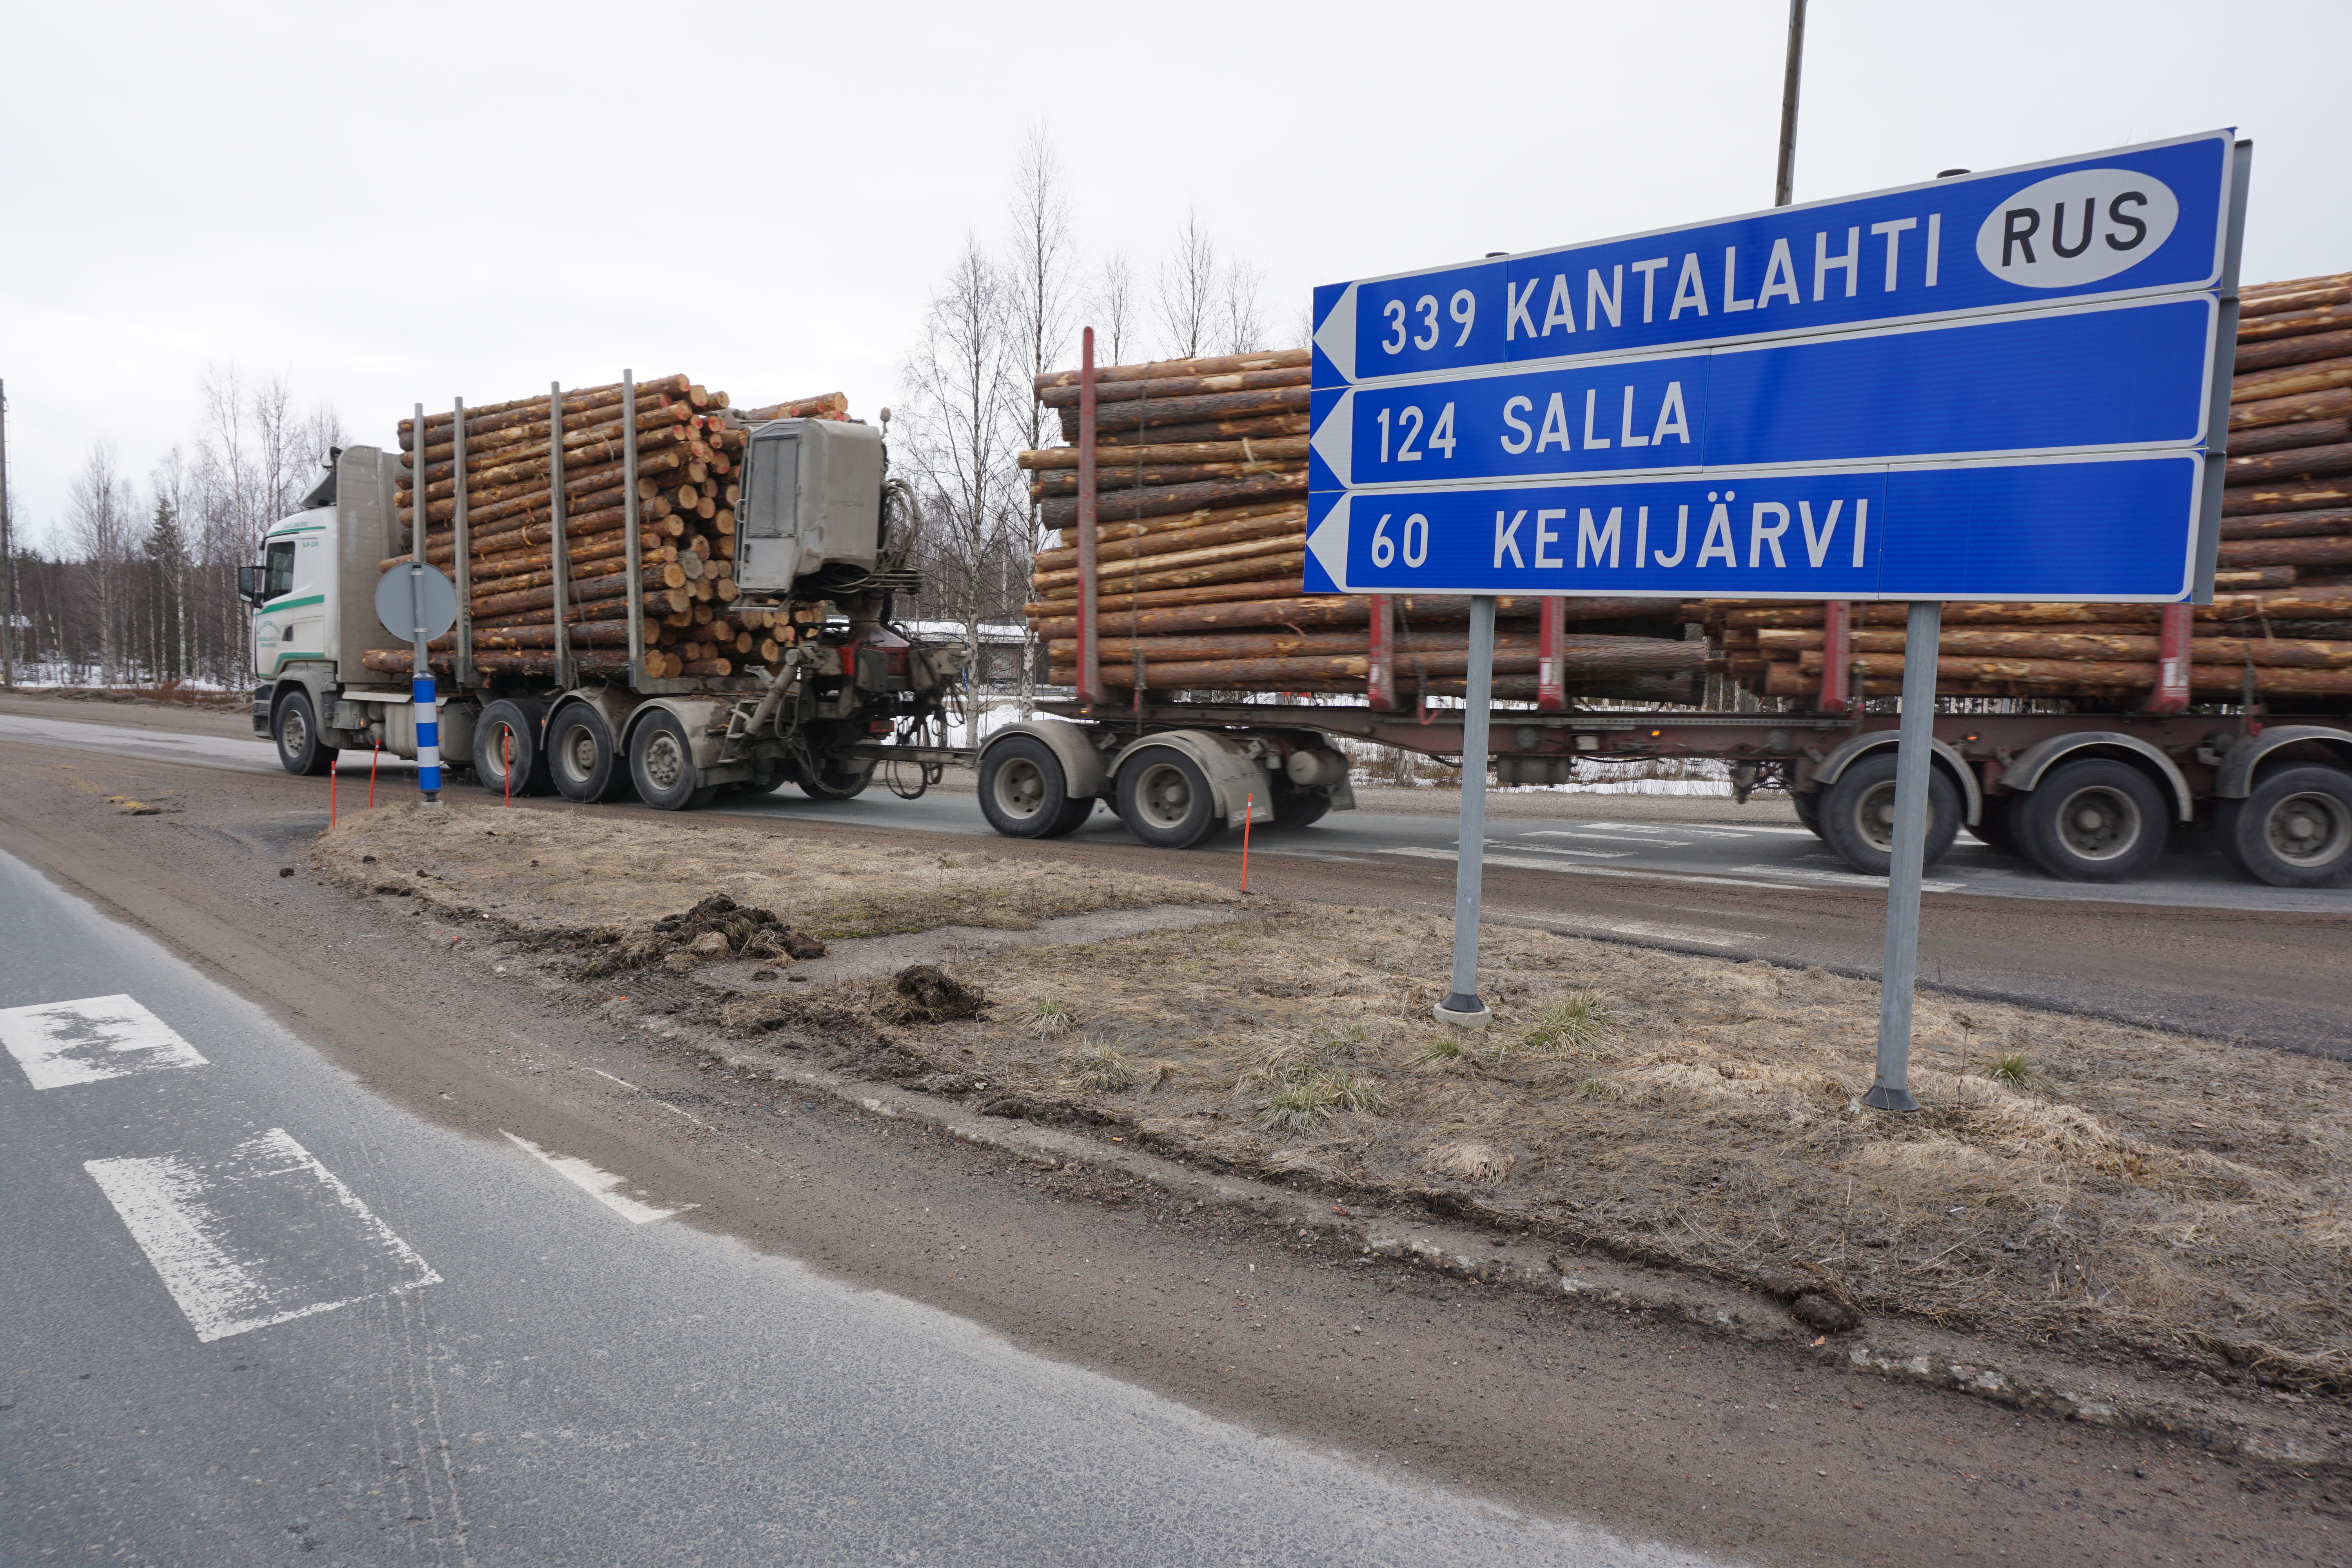 Reisen nach Lappland-Russland sind im Vergleich zu Zeiten vor Covid um 97 % zurückgegangen